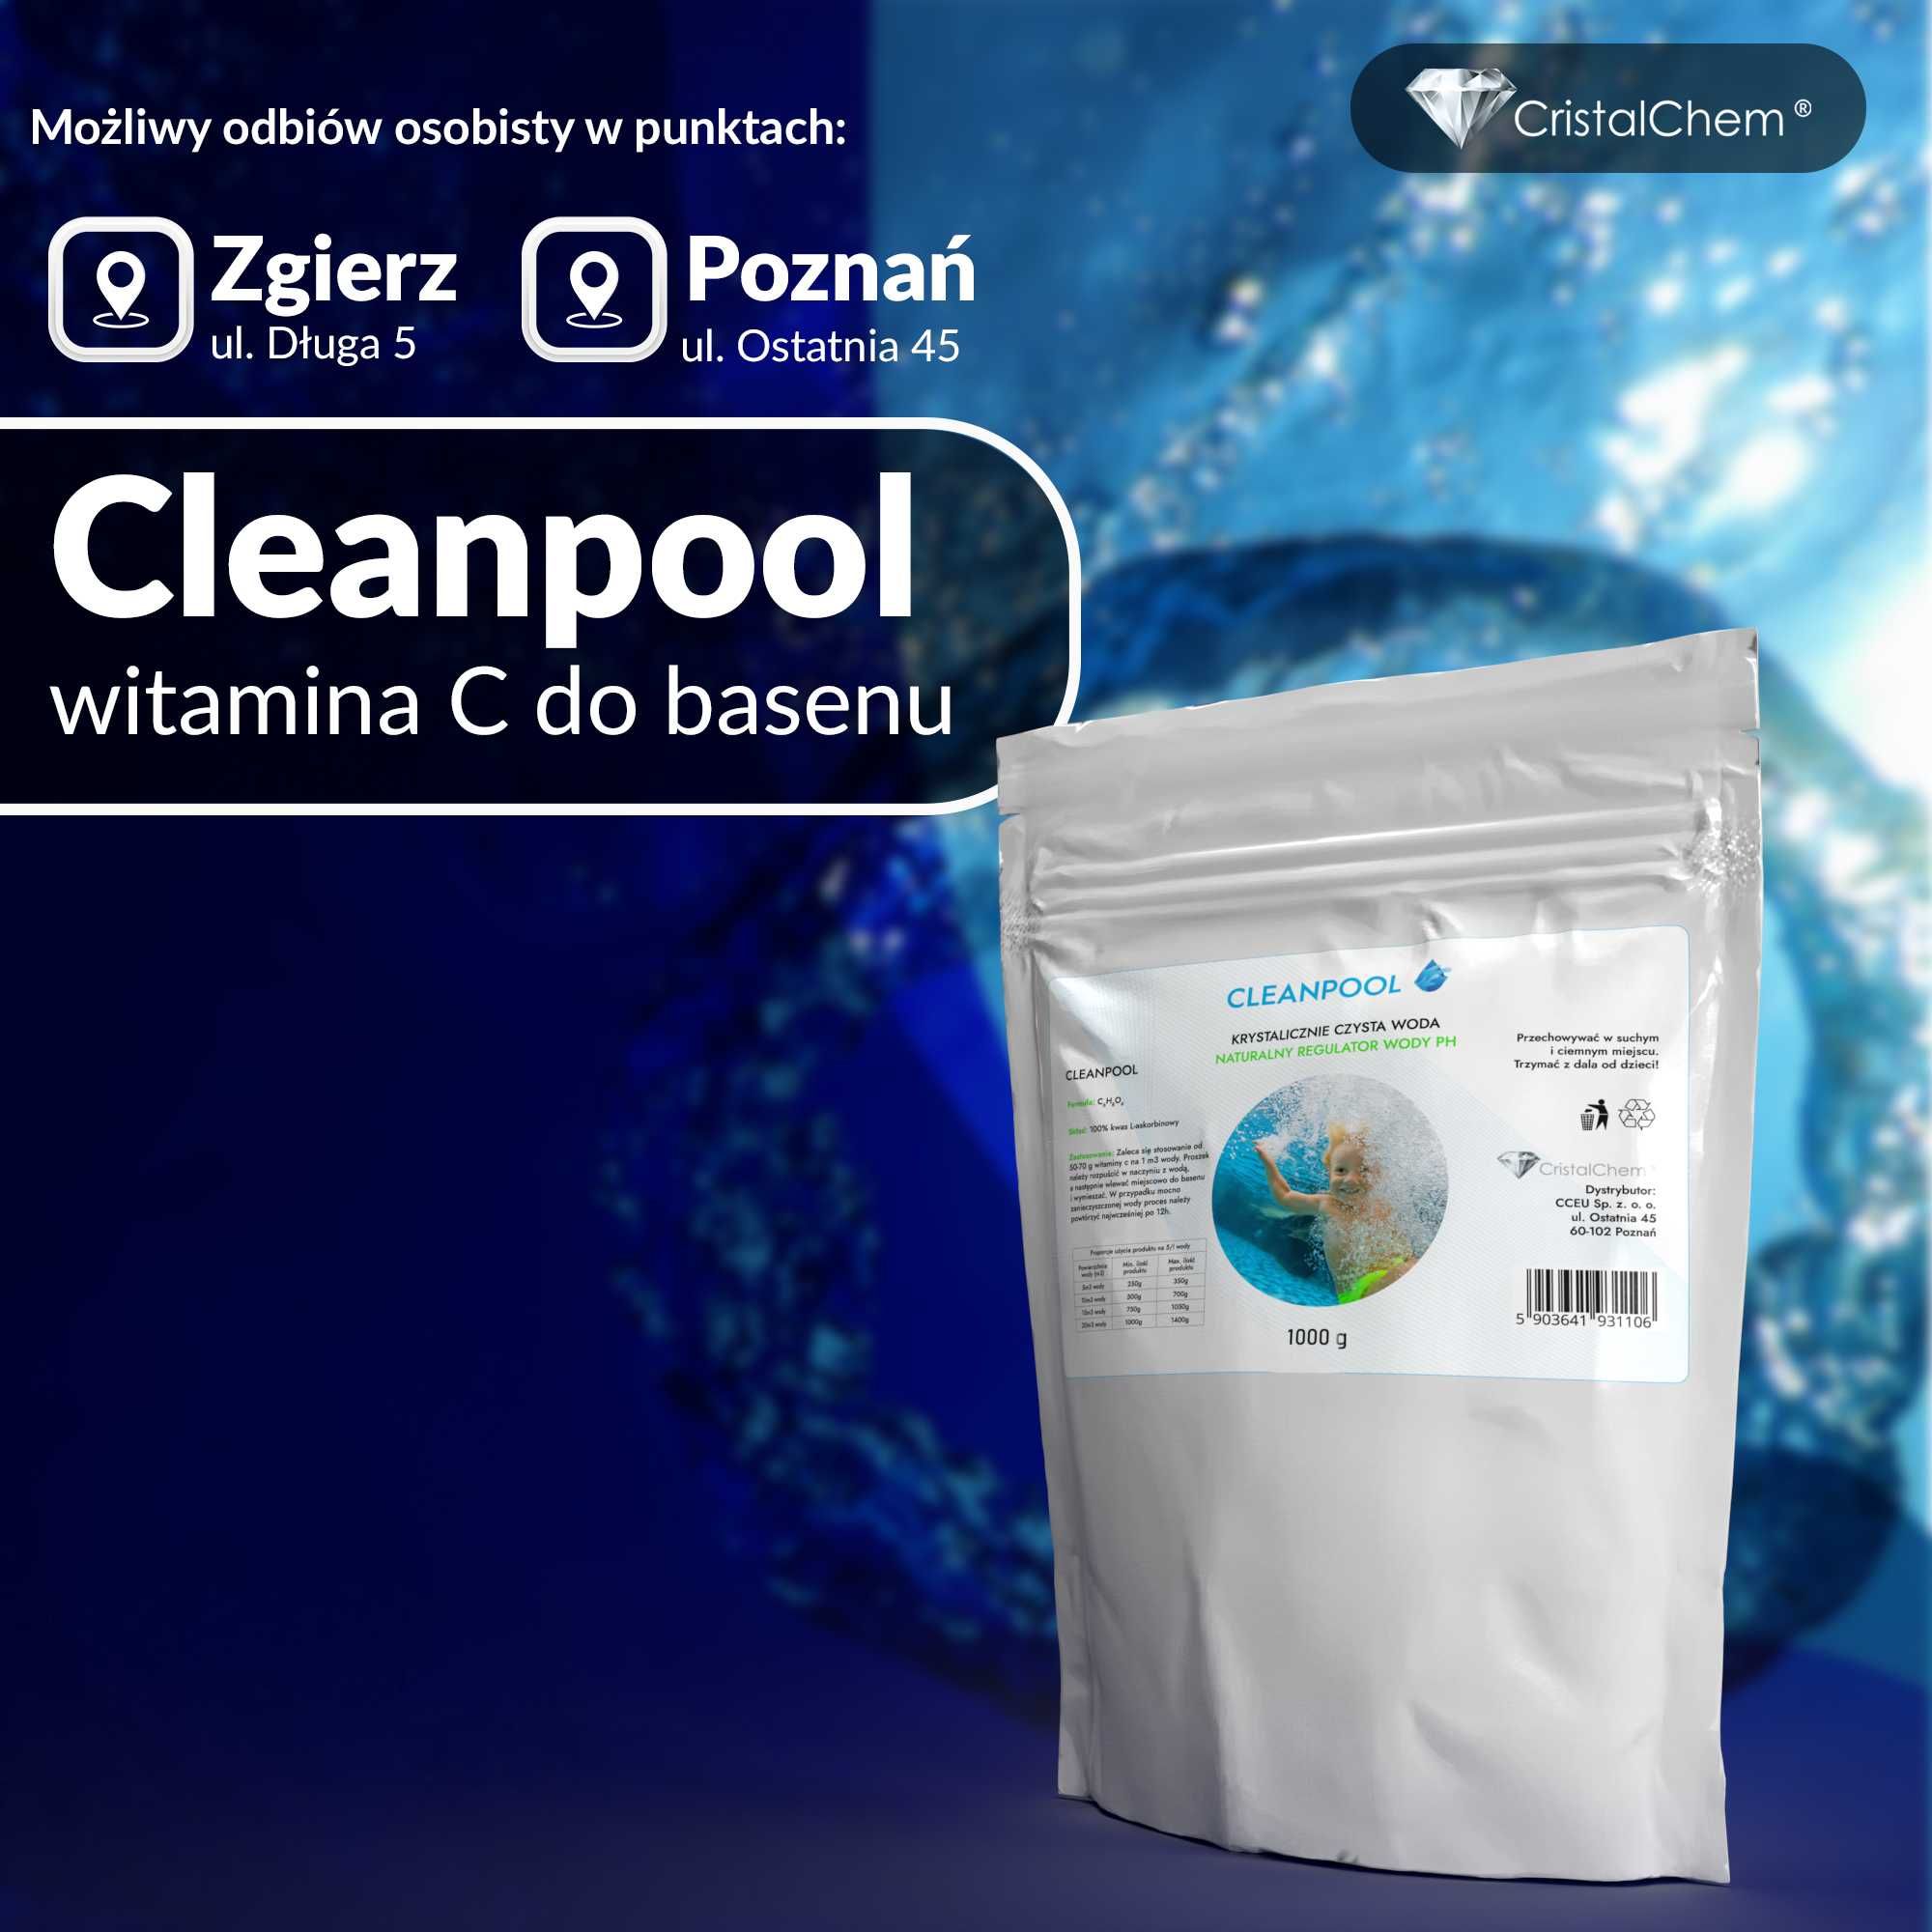 Cleanpool 1000g - Witamina C - Naturalny Regulator Wody PH do basenu